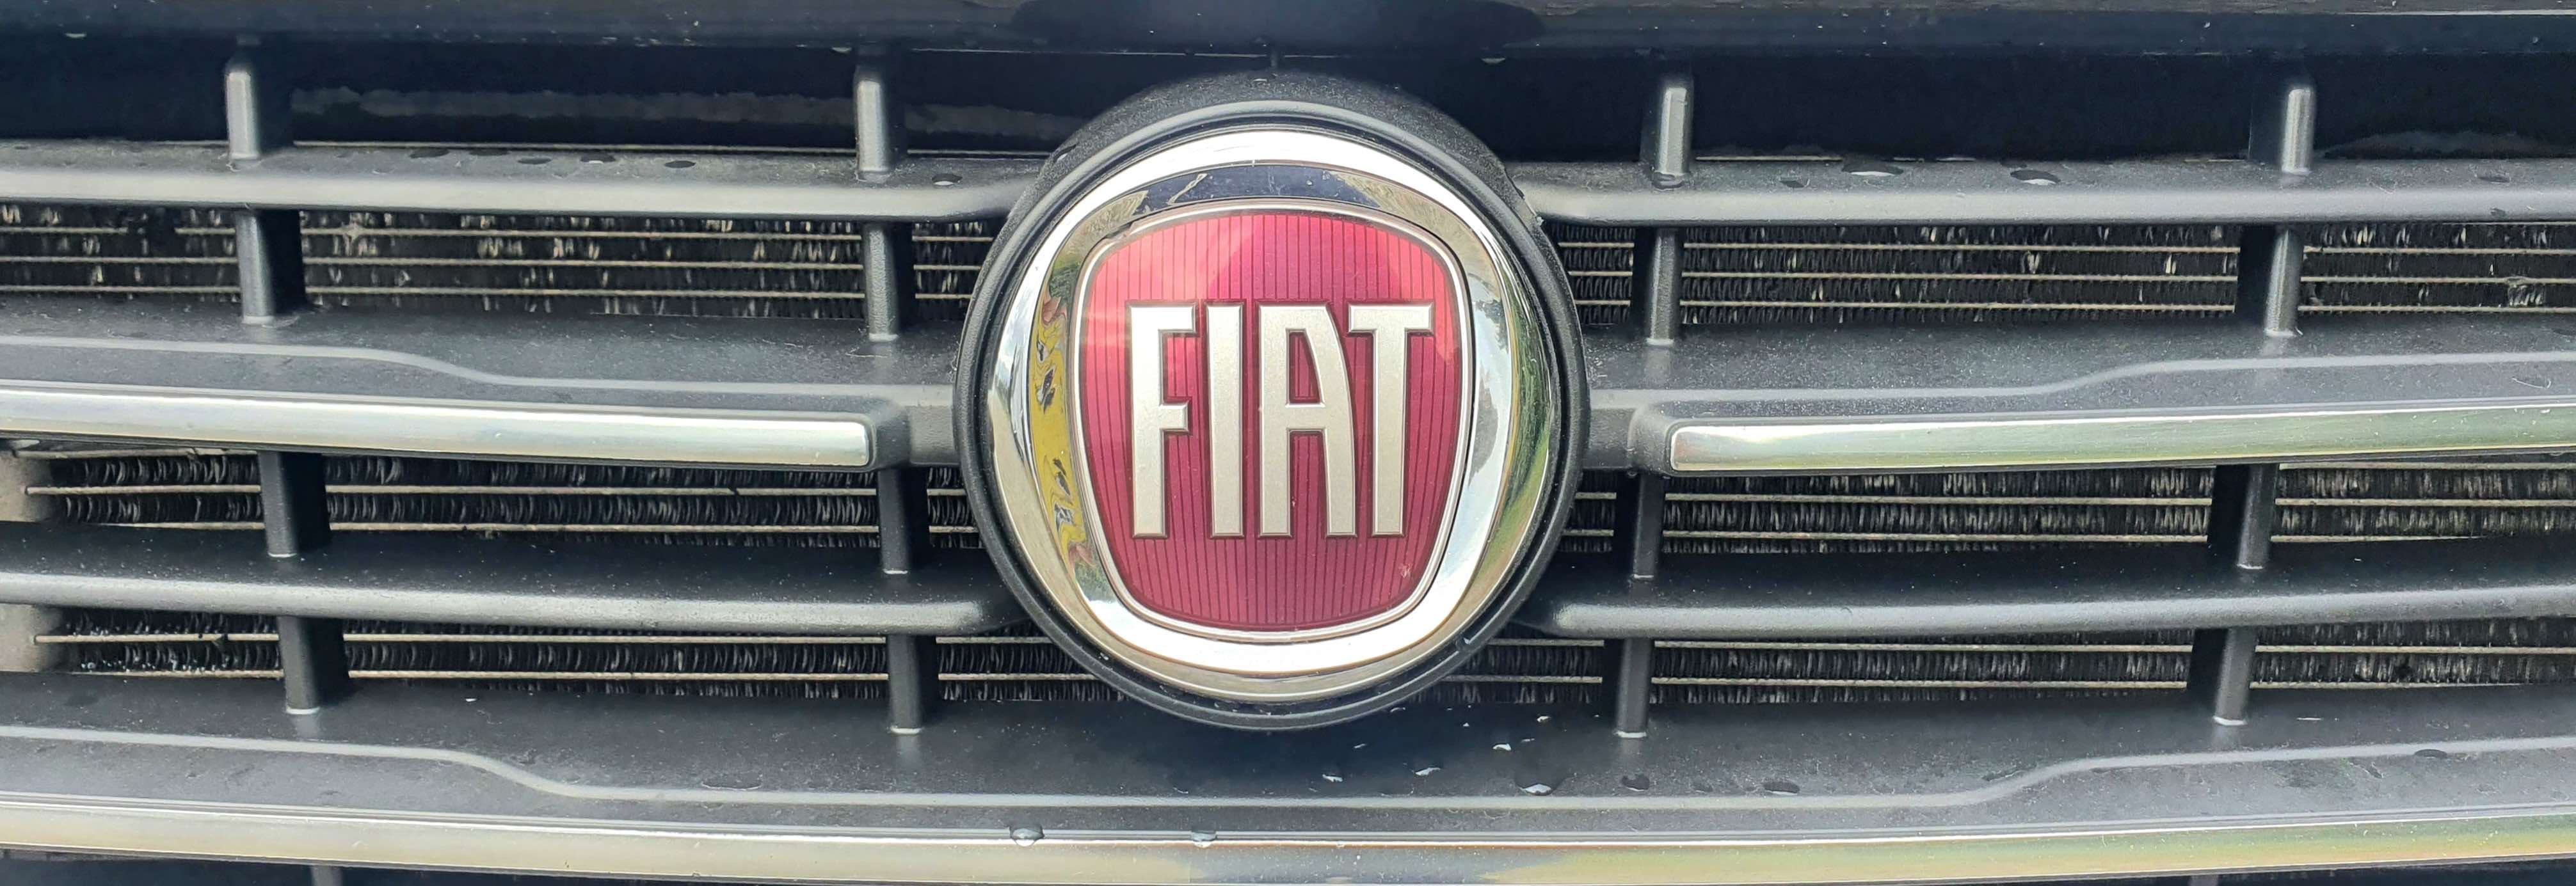 FIAT DUCATO 2022  New in Series 8 